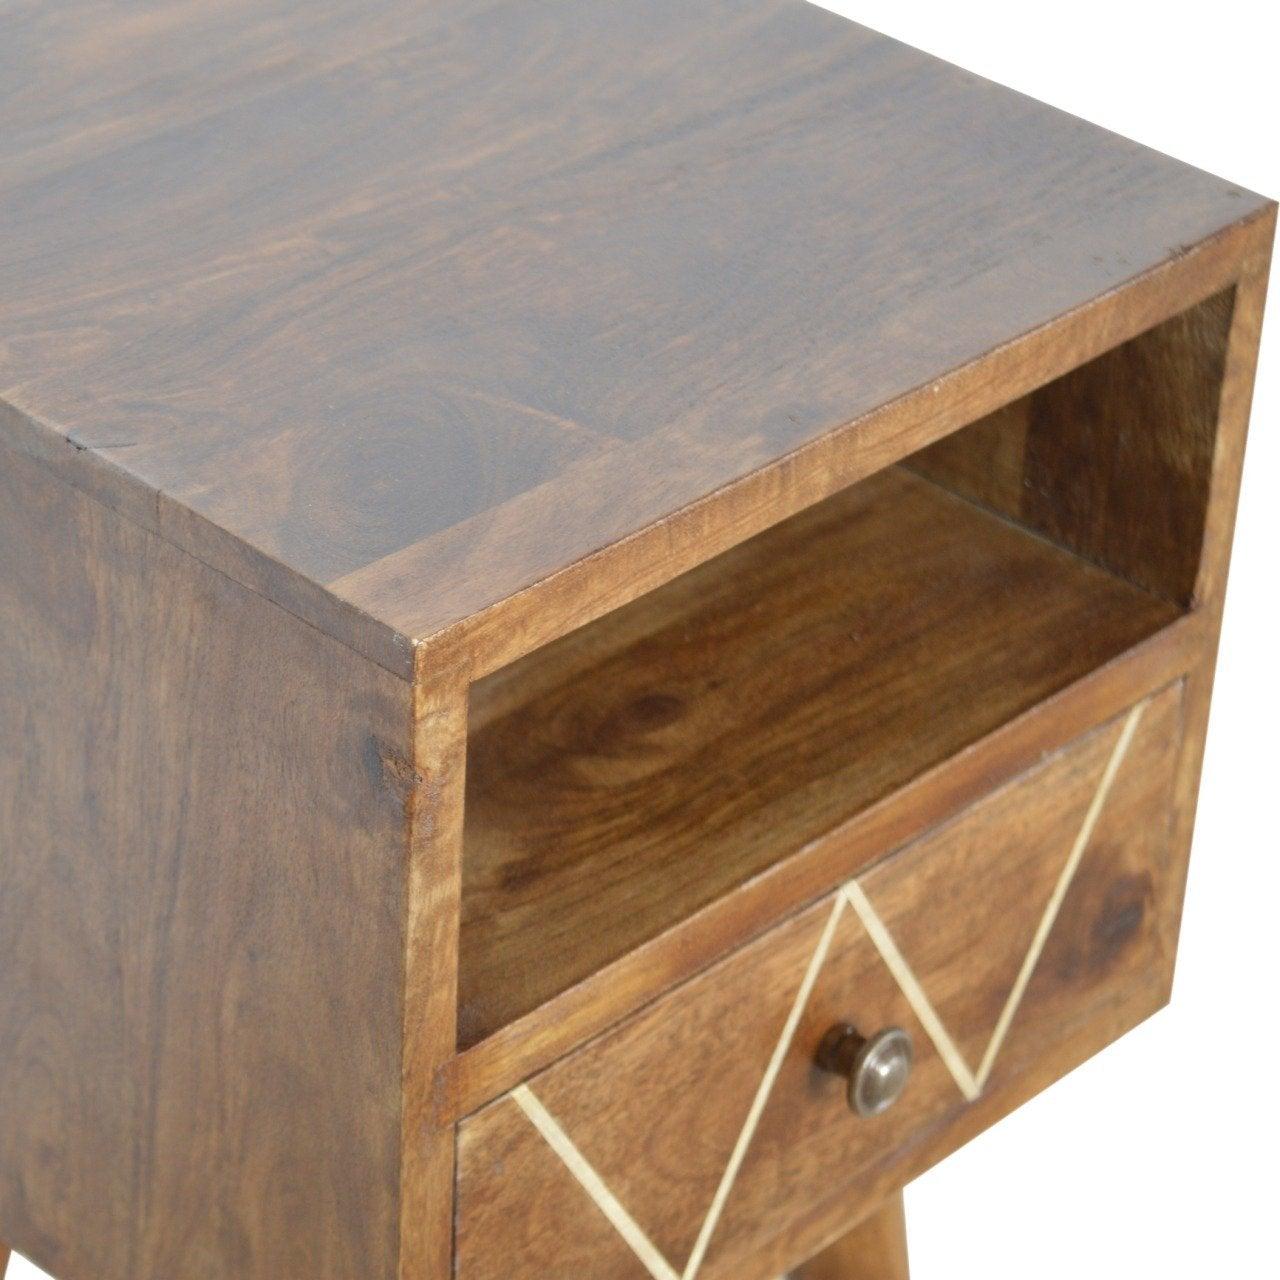 Petite geometric brass inlay bedside table - crimblefest furniture - image 7